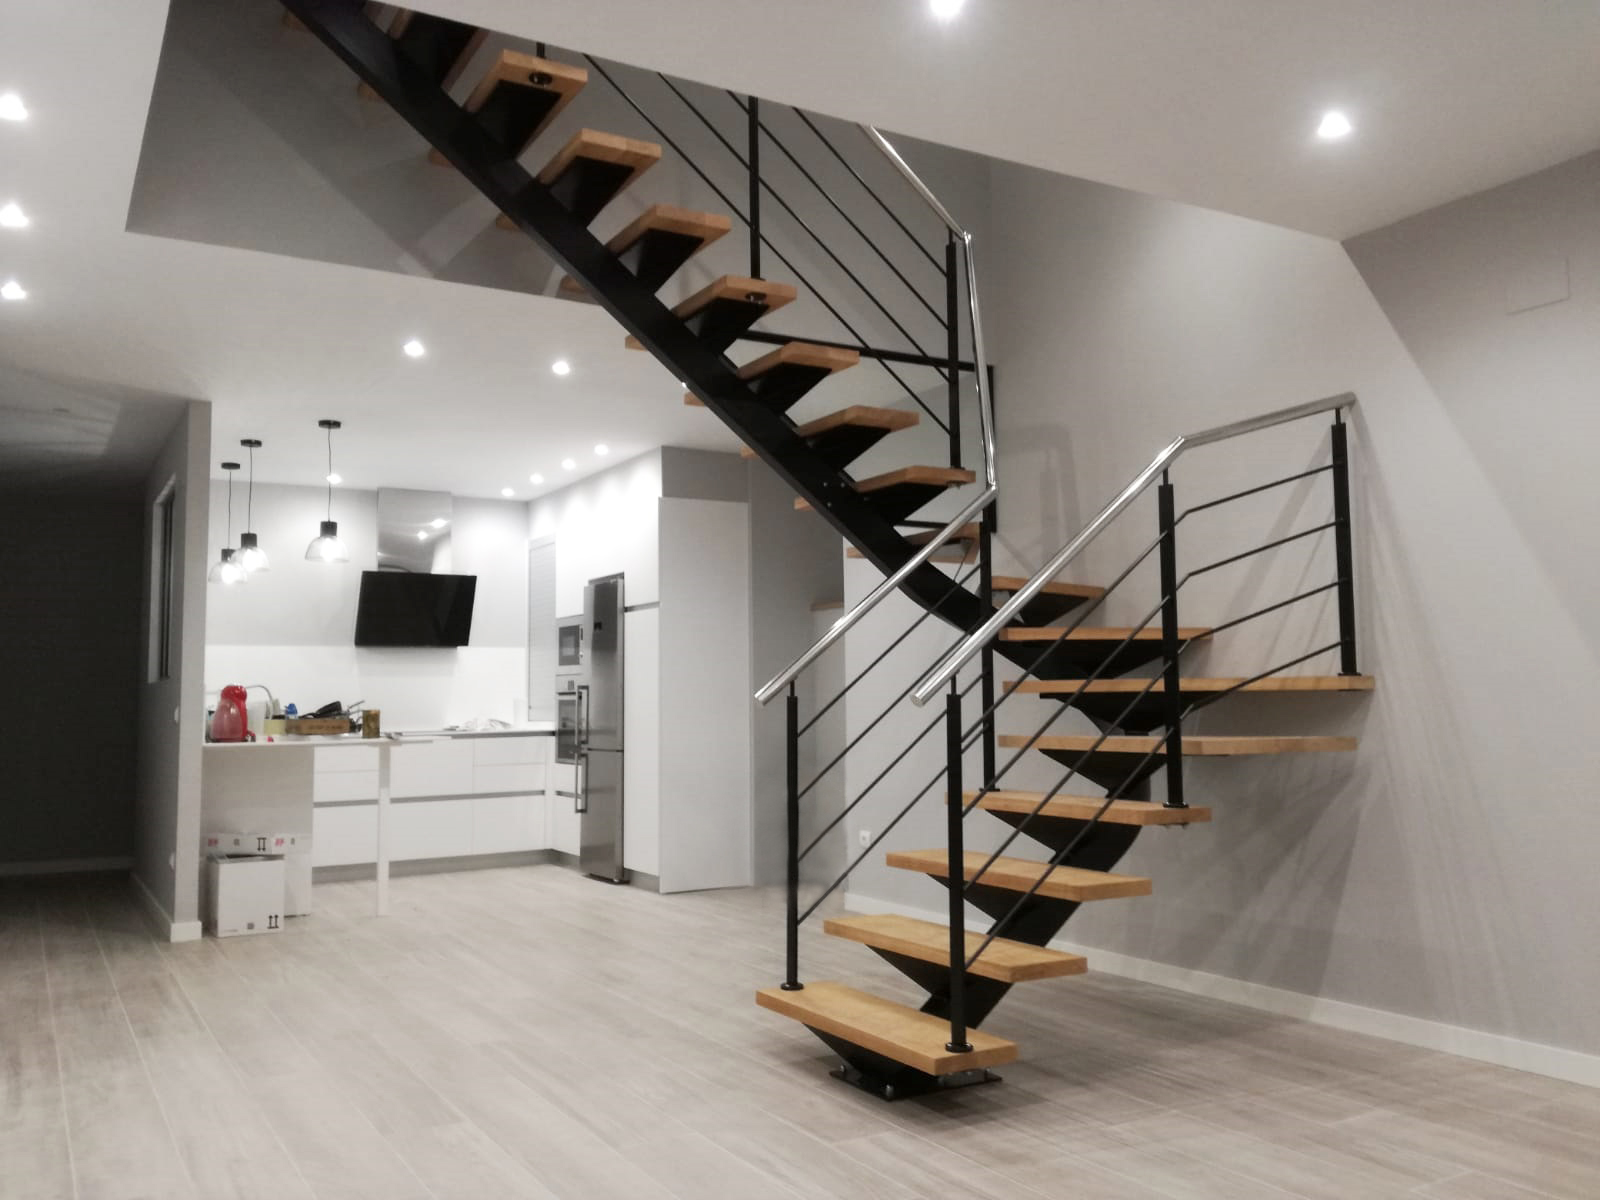 empresas fabricantes de escaleras metalicas en pamplona, hacemos escaleras a medida con madera y hierro,